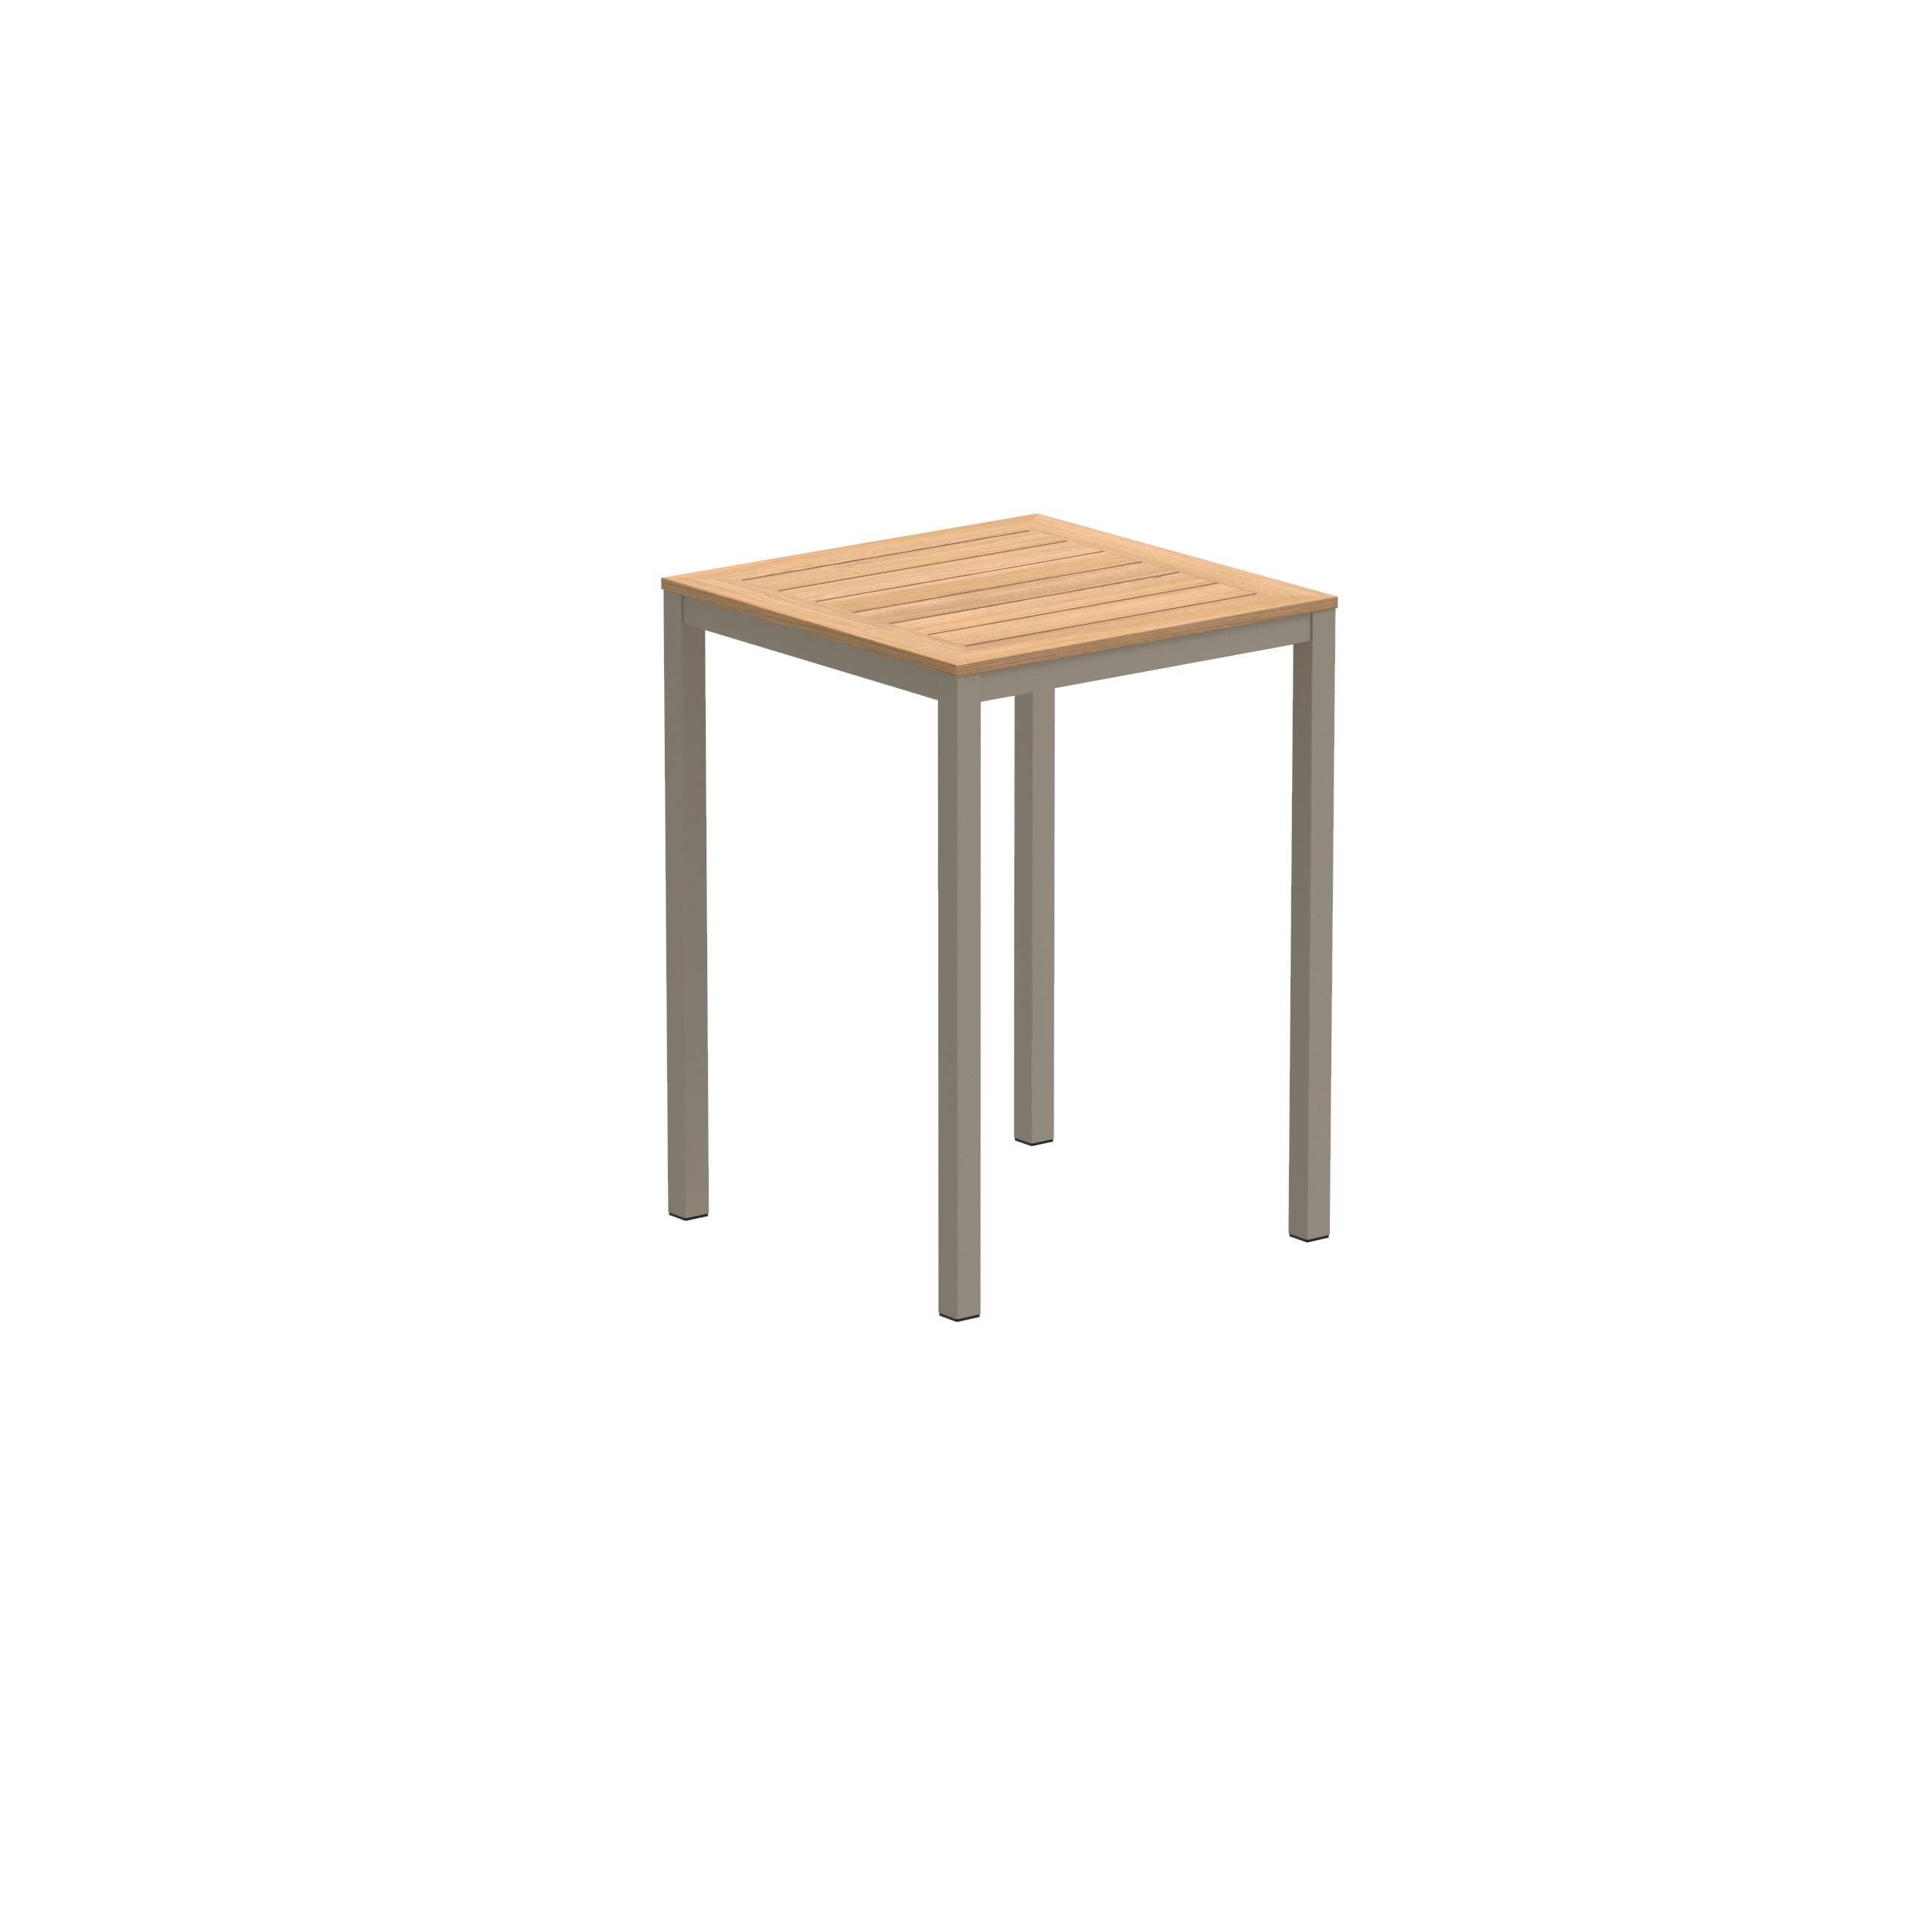 Taboela High Table 80x80cm Sand With Teak Tabletop